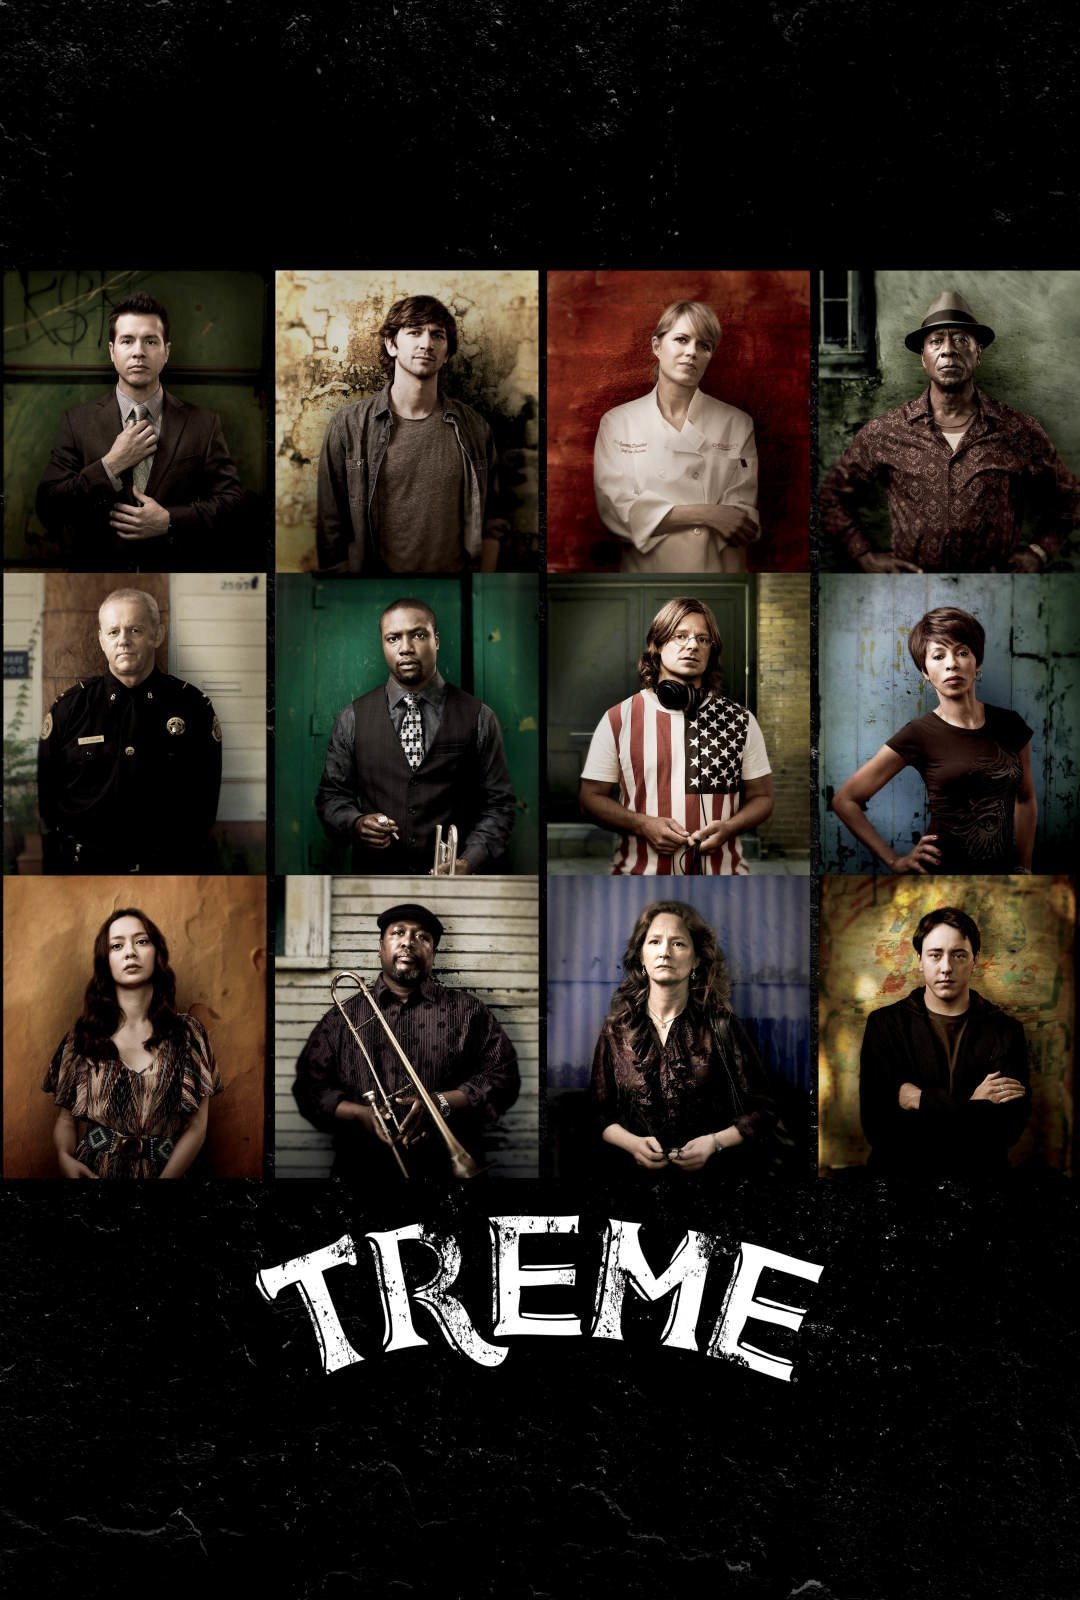 Watch Treme Season 2 Online - Stream Full Episodes